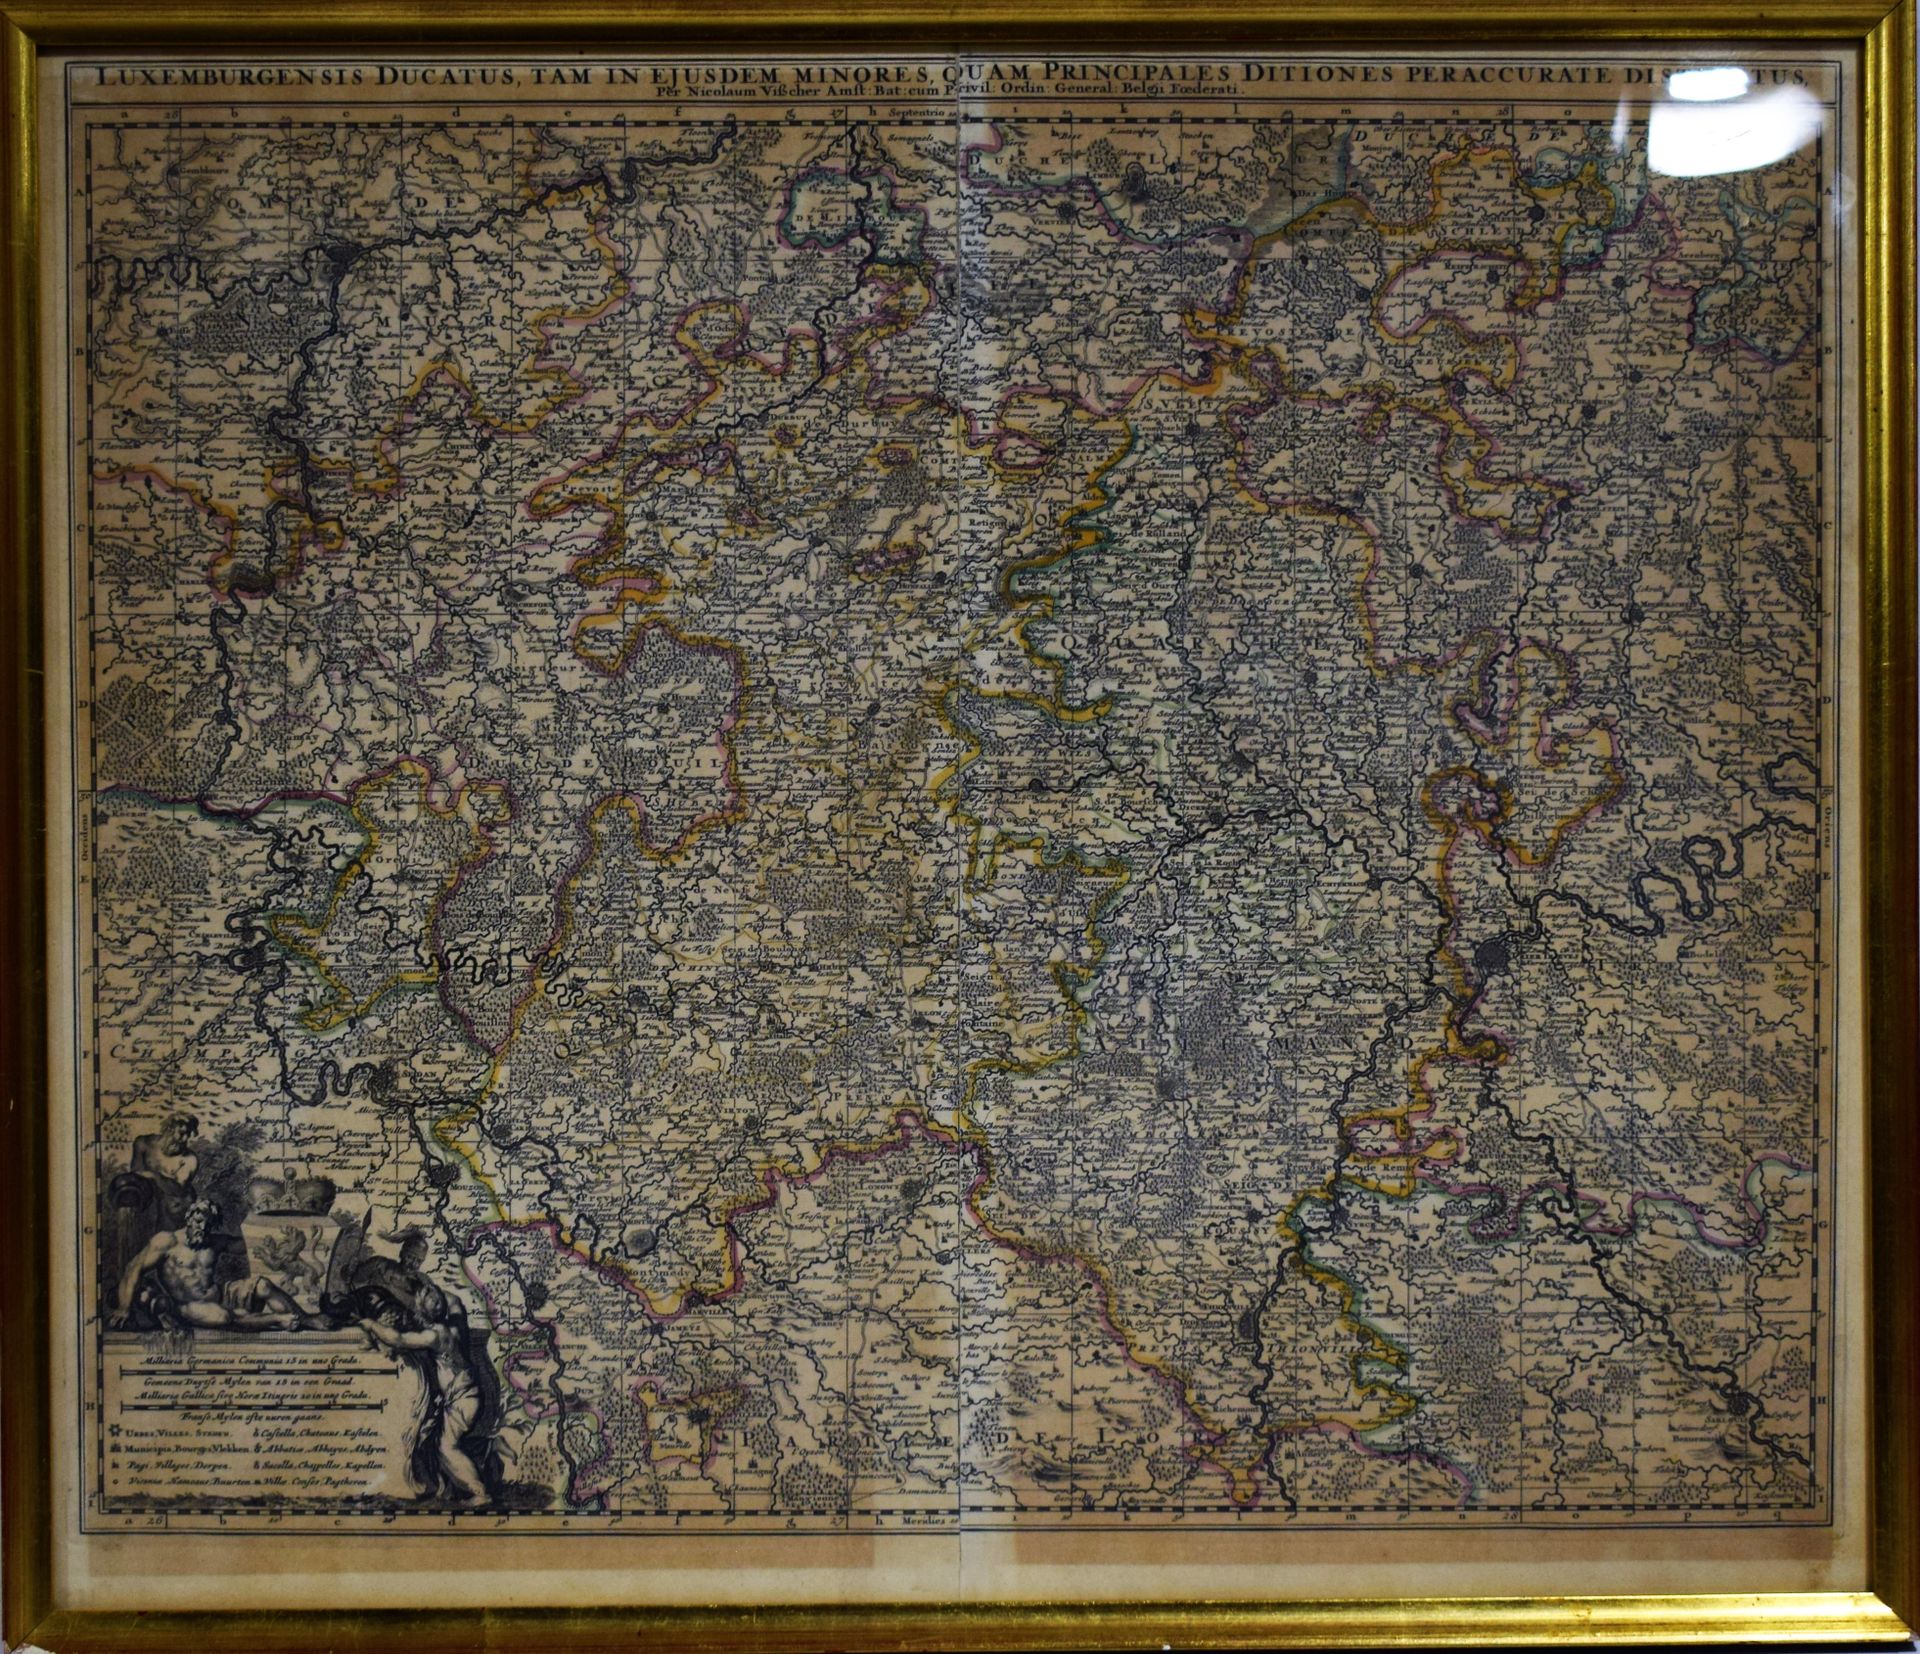 Null (KARTE) Karte von Luxemburg "Luxemburgensis ducatus, tam in ejusdem minores&hellip;